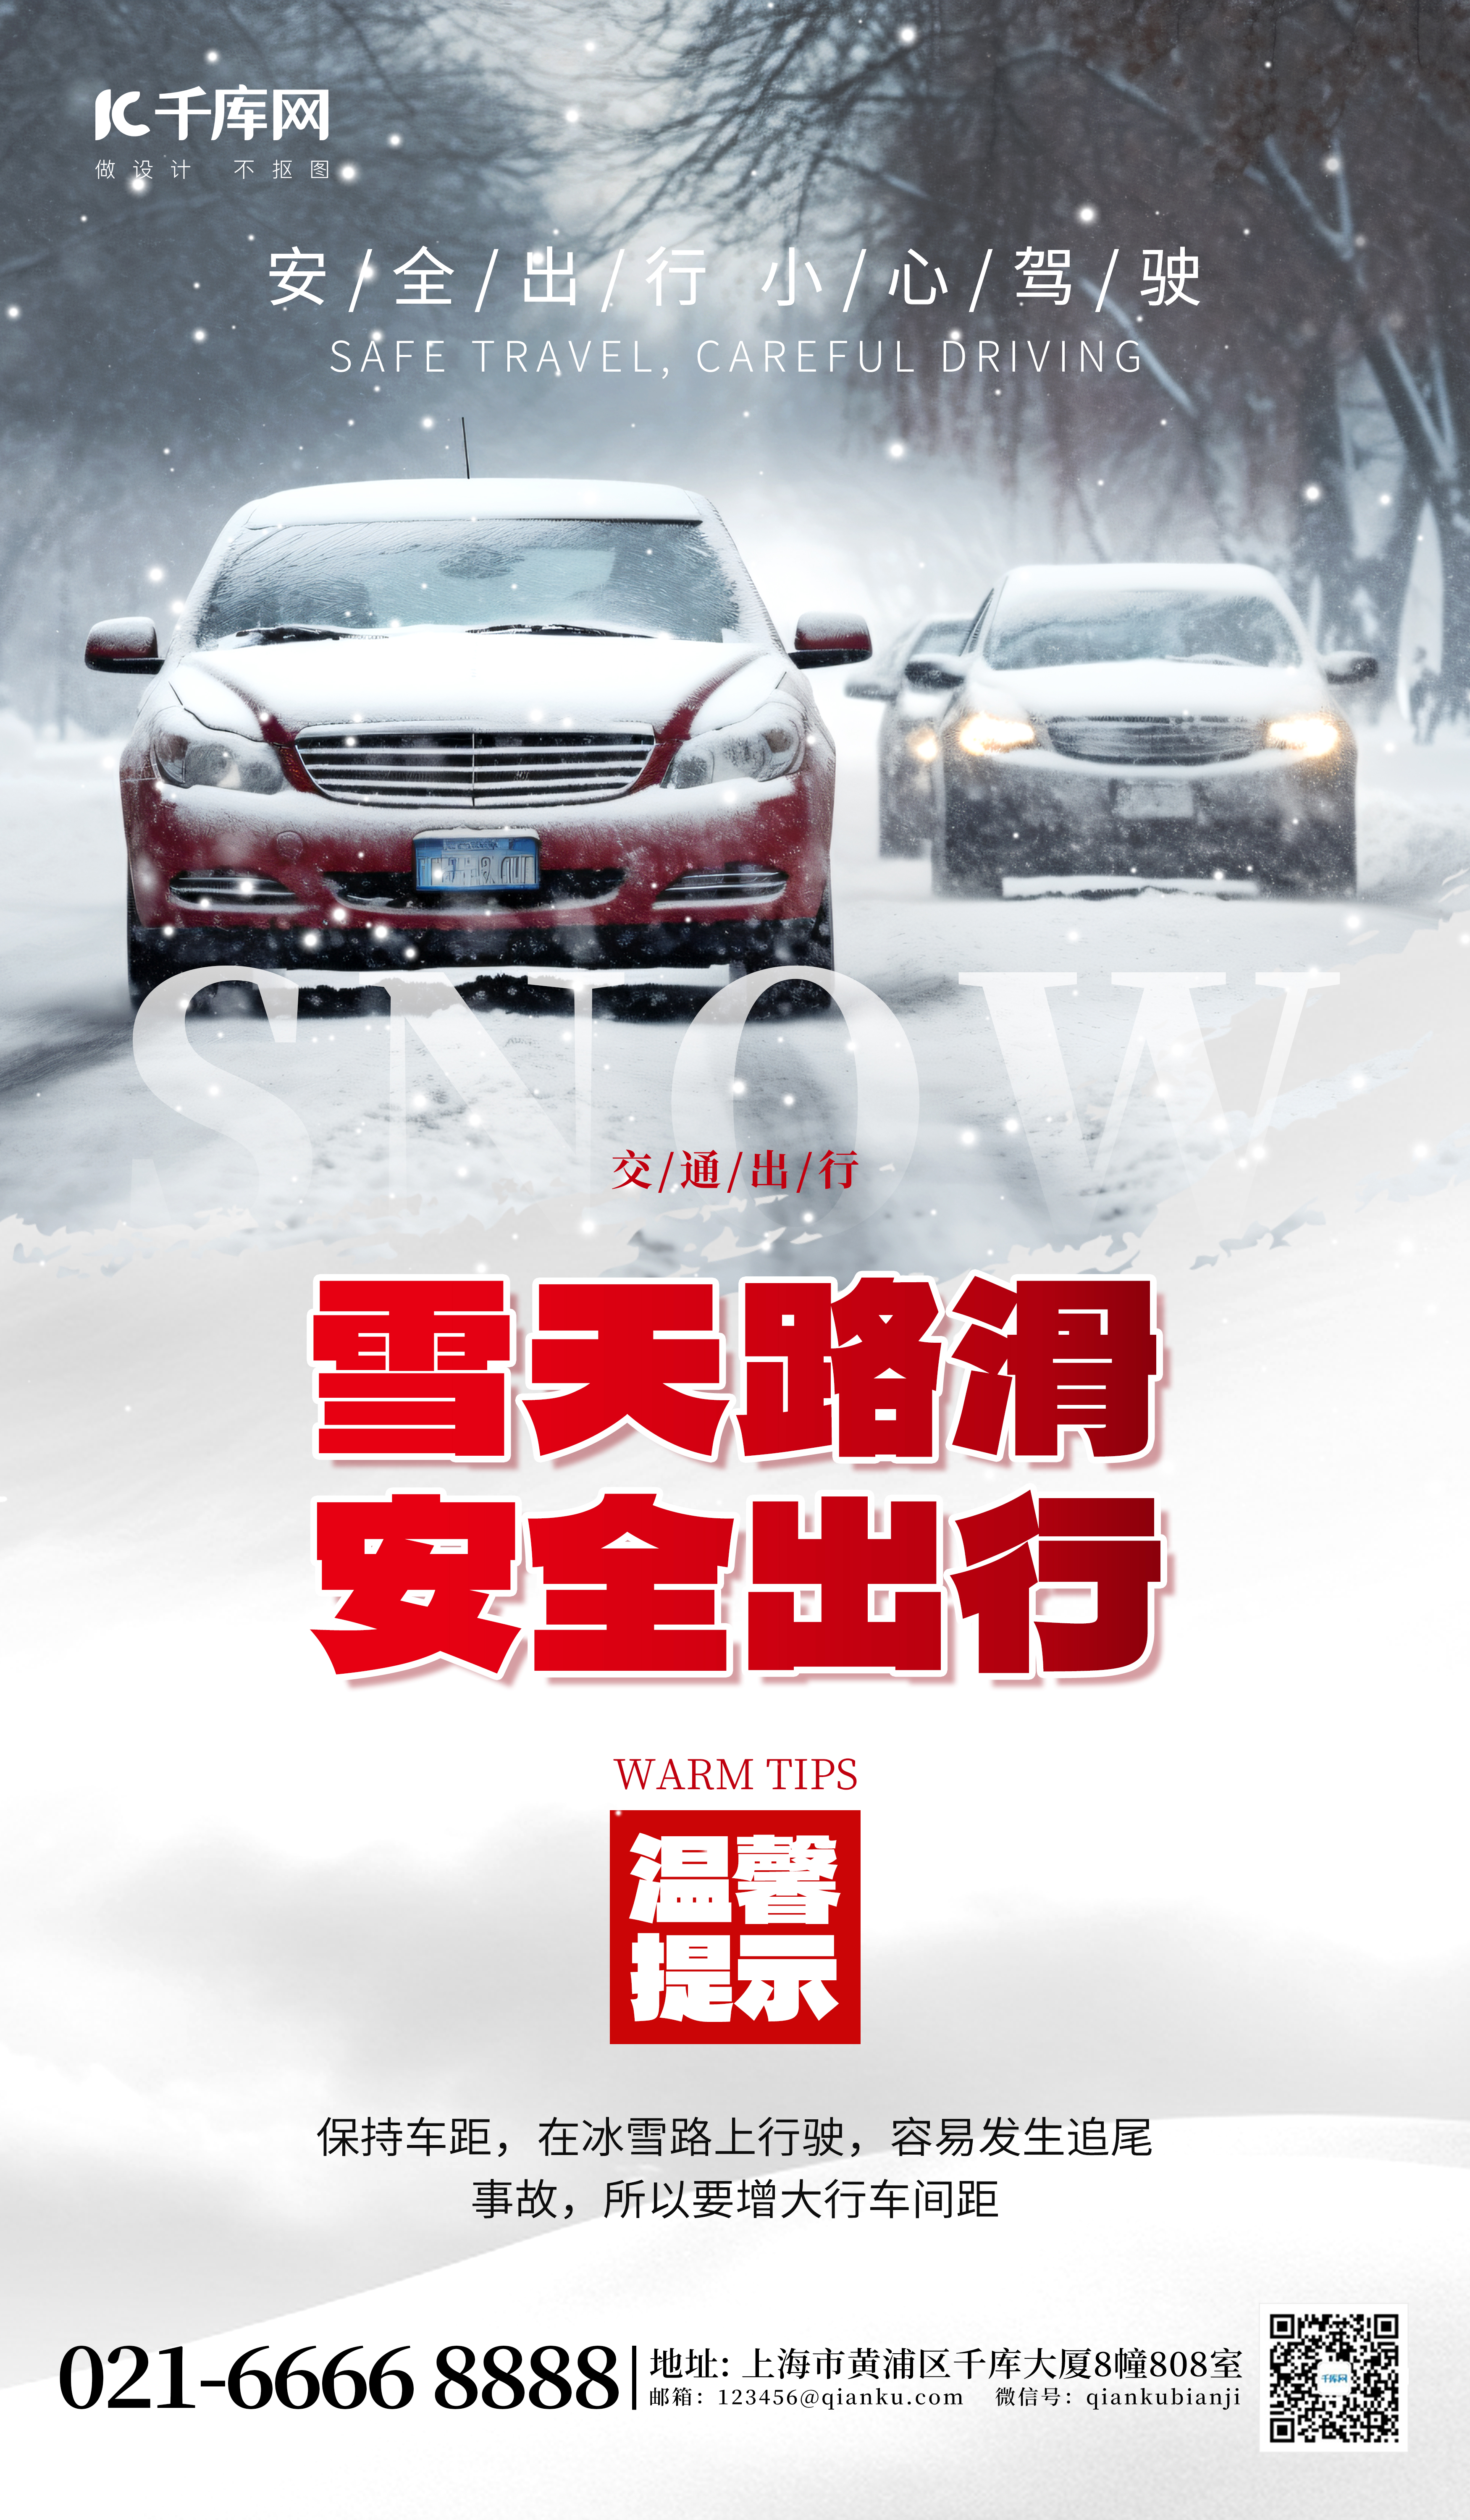 雪天路滑安全出行汽车交通灰白色广告宣传海报图片